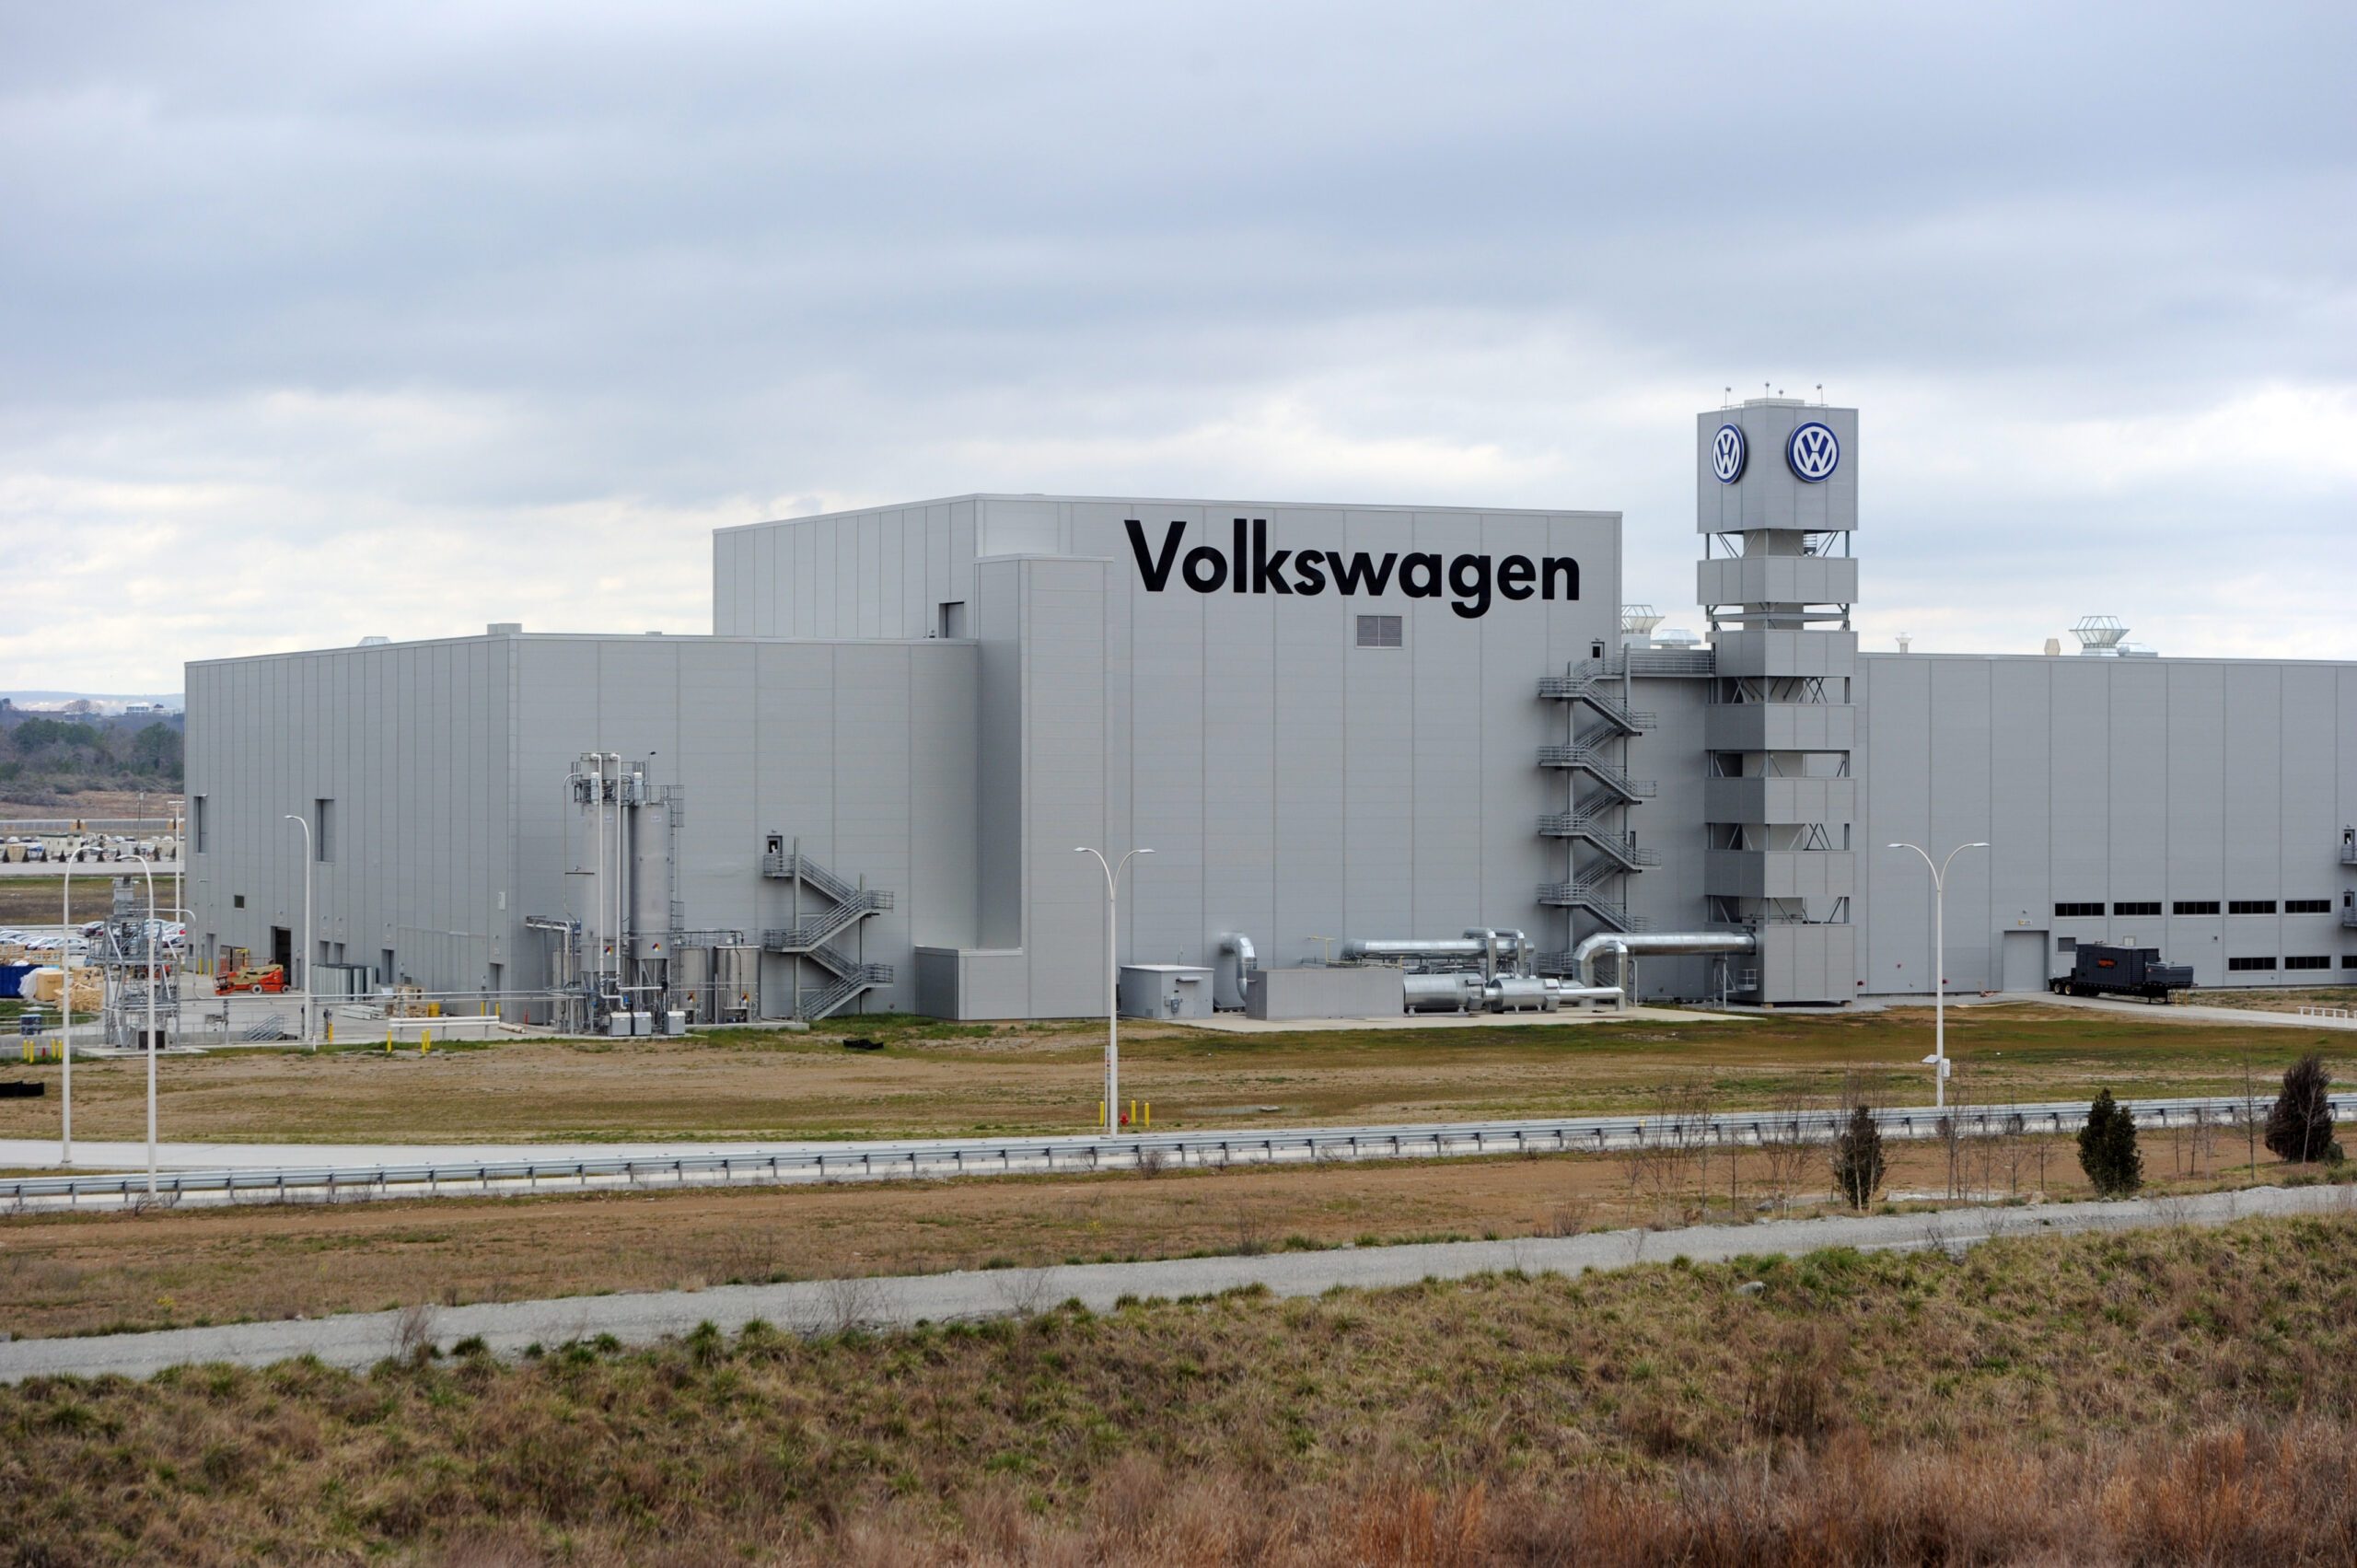 Scandal-hit Volkswagen also faces US union battle